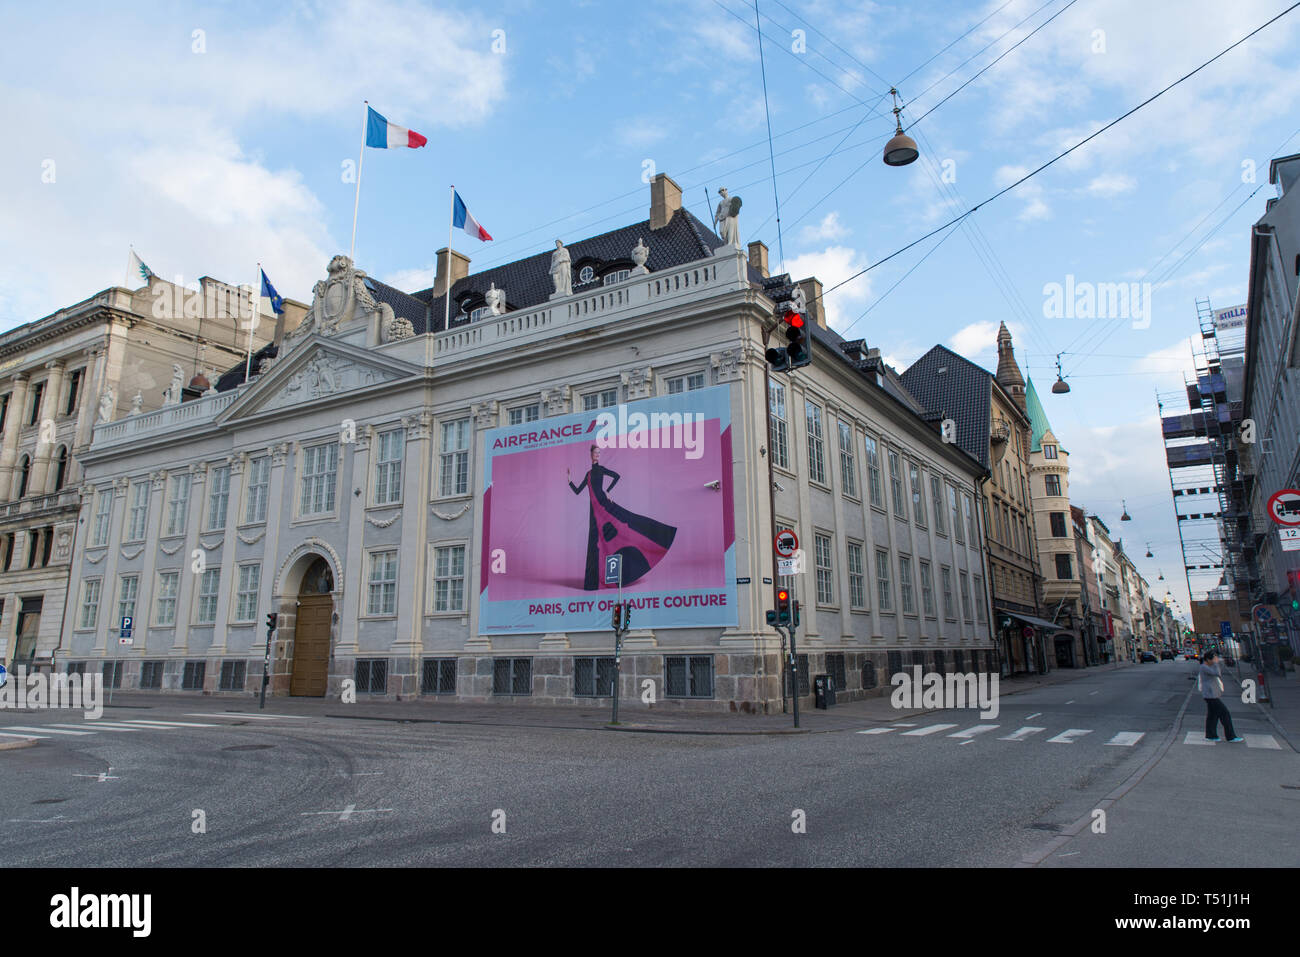 Un Air-France palizzata sull'ambasciata francese annuncia a Parigi come la città di haute couture , Copenhagen, Danimarca. Foto Stock